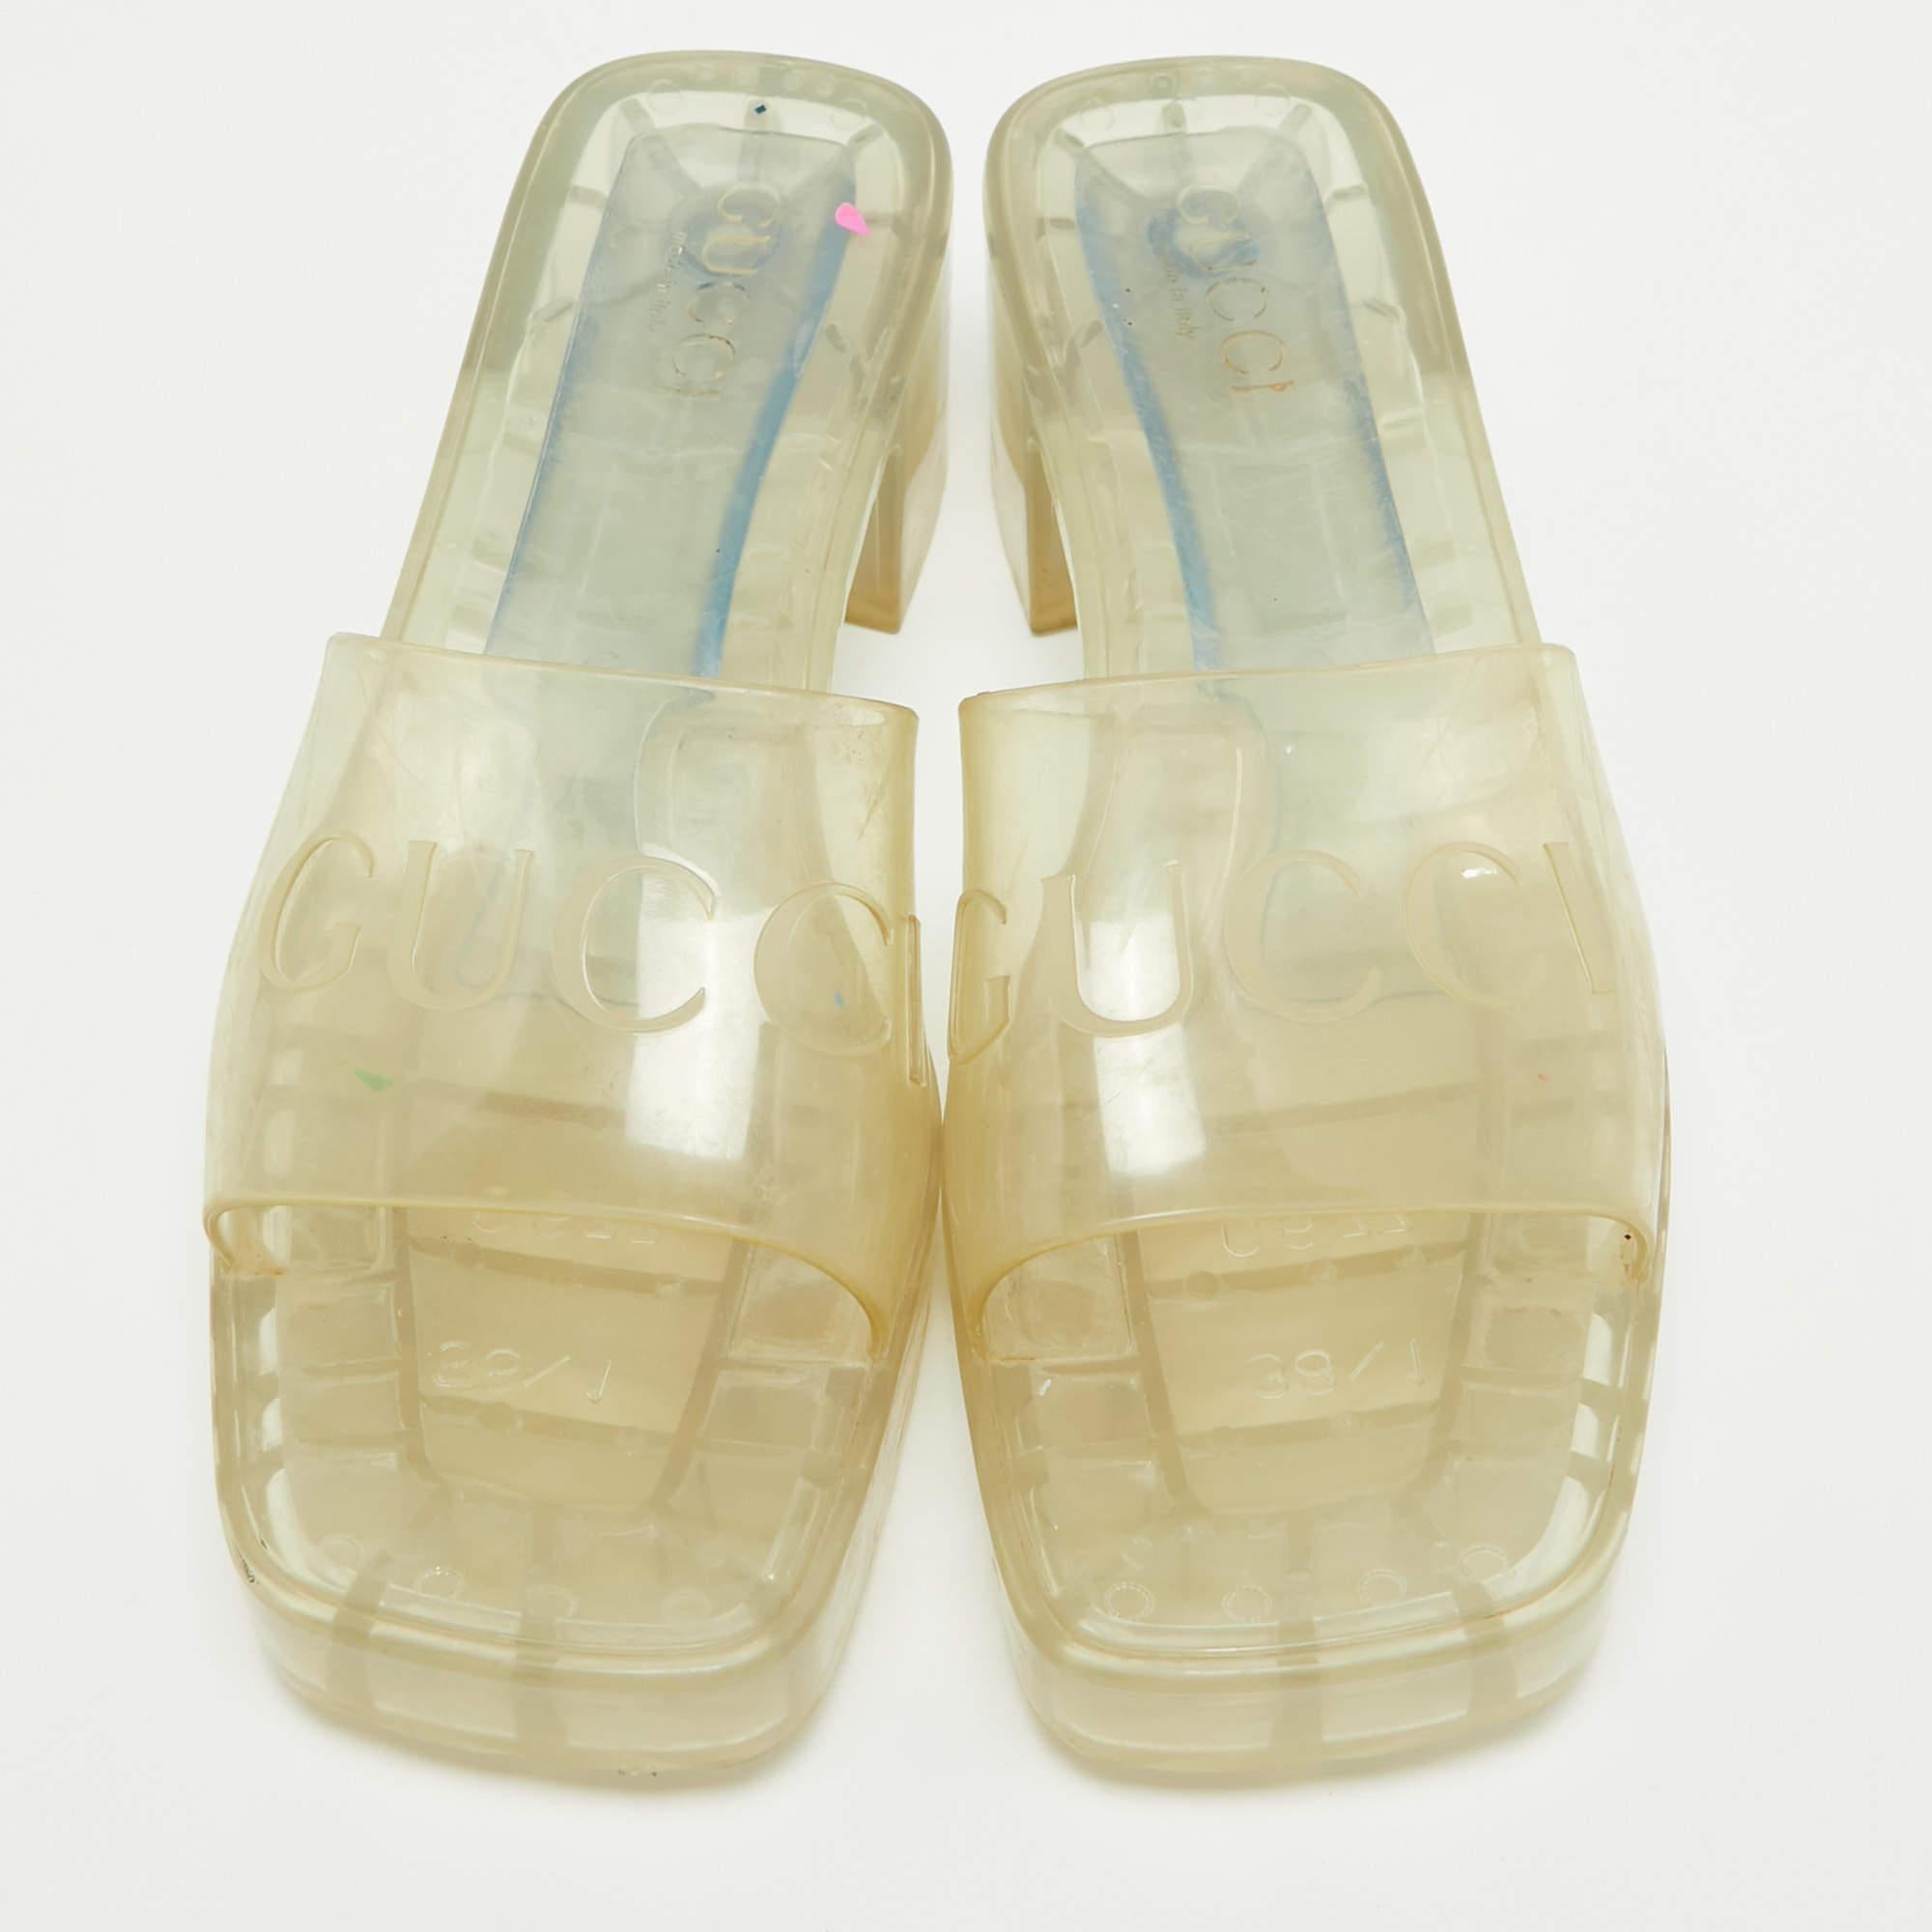 Diese Sandalen umrahmen Ihre Füße auf elegante Weise. Sie sind aus hochwertigen MATERIALEN gefertigt, haben ein edles Design und bequeme Innensohlen.

